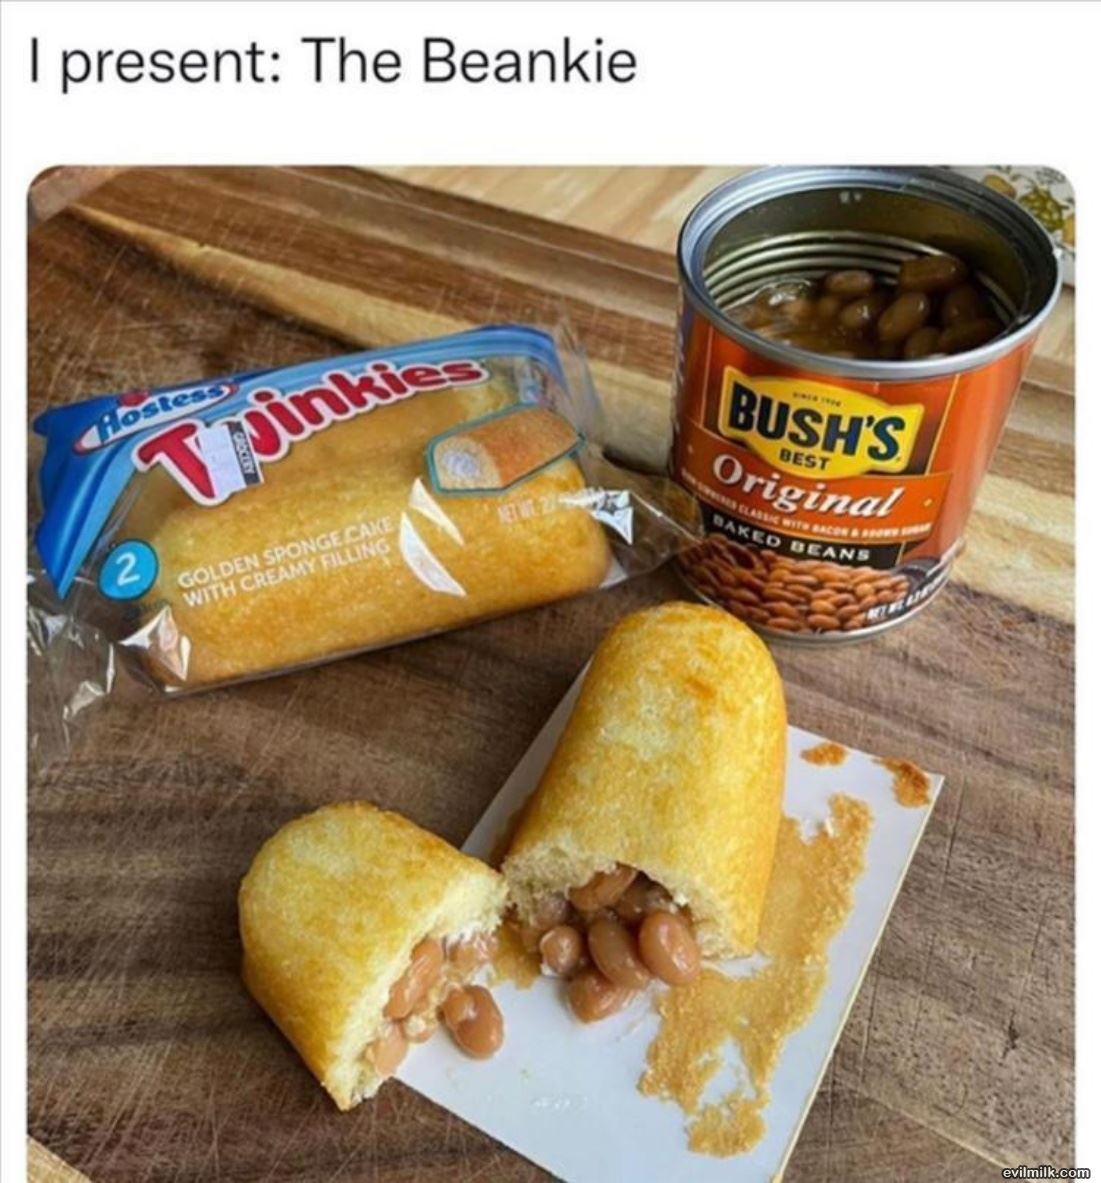 The Beankie